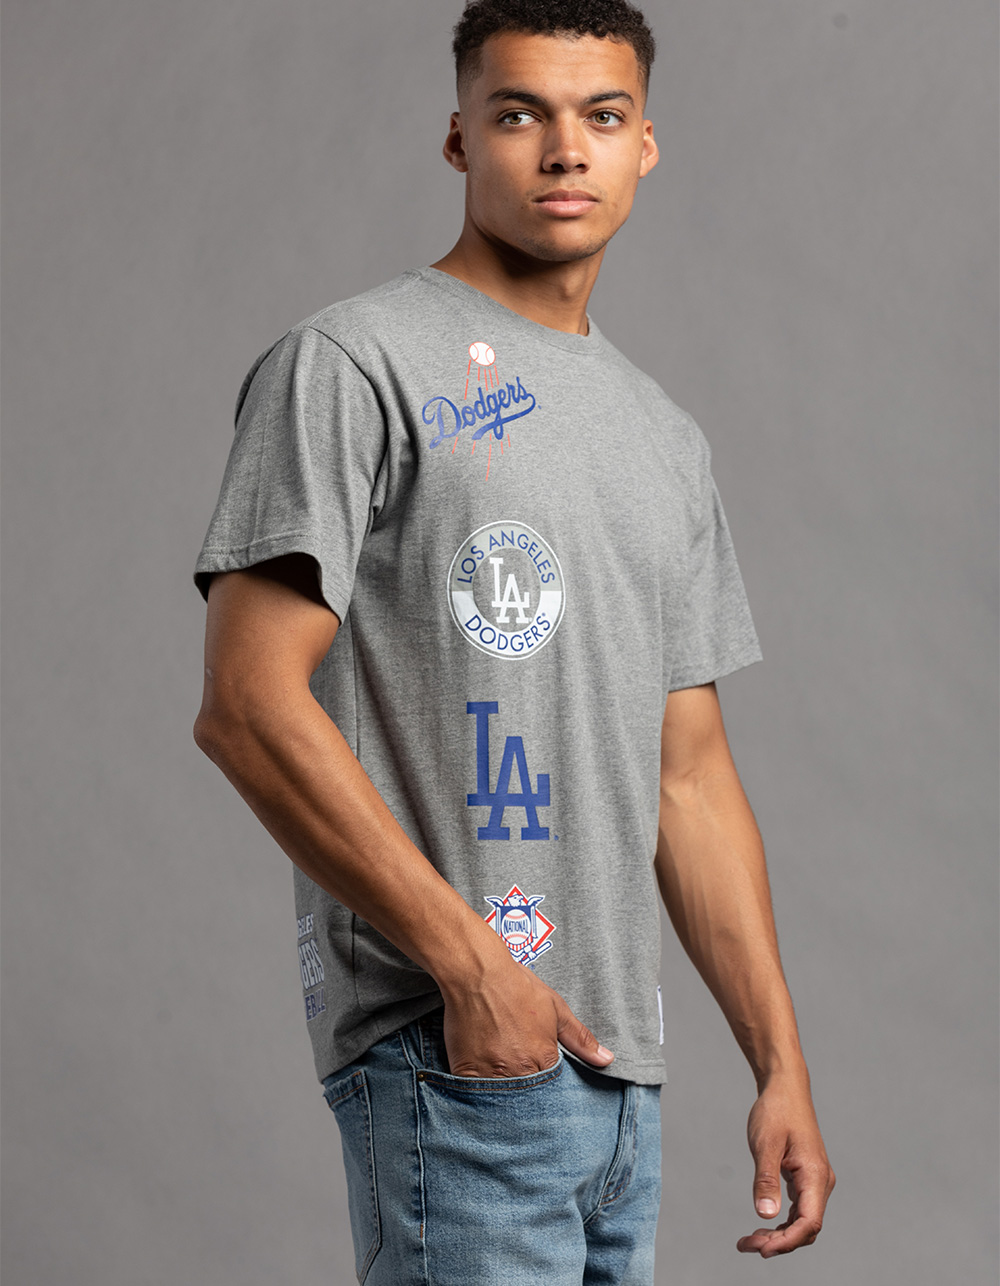 Dodgers Shirt Men